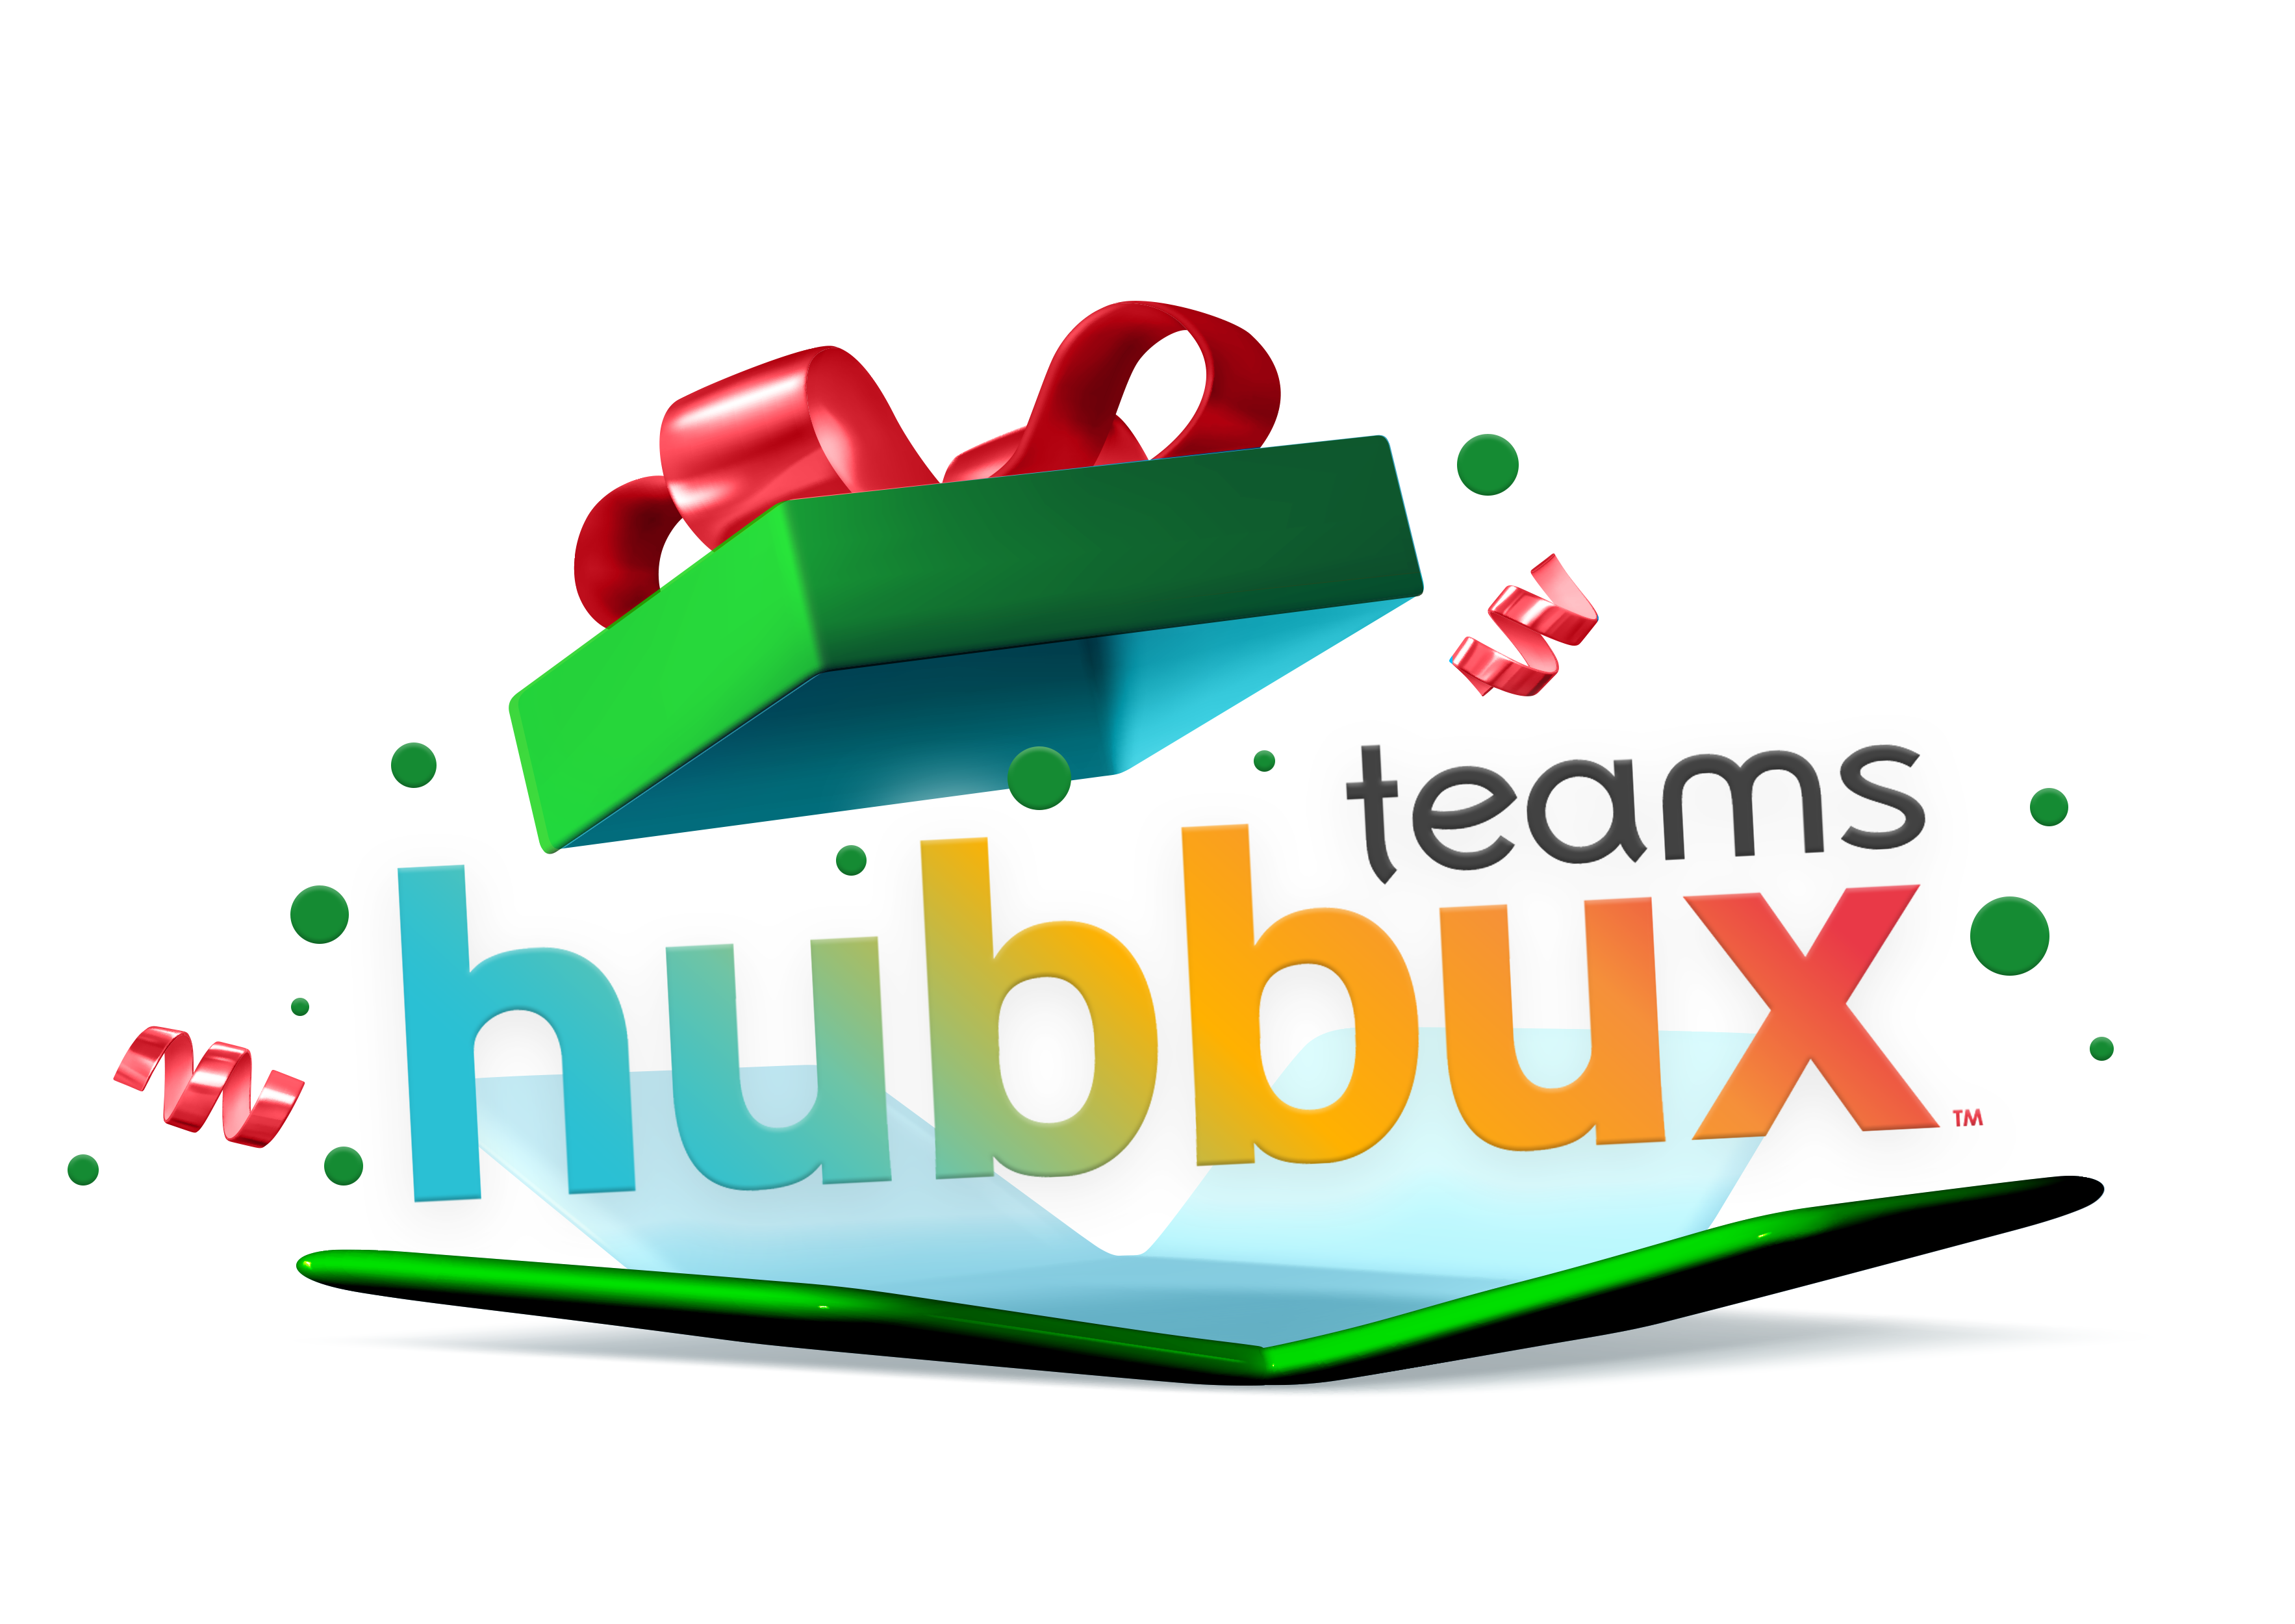 Hubbux_Gift_Holiday_v3.png